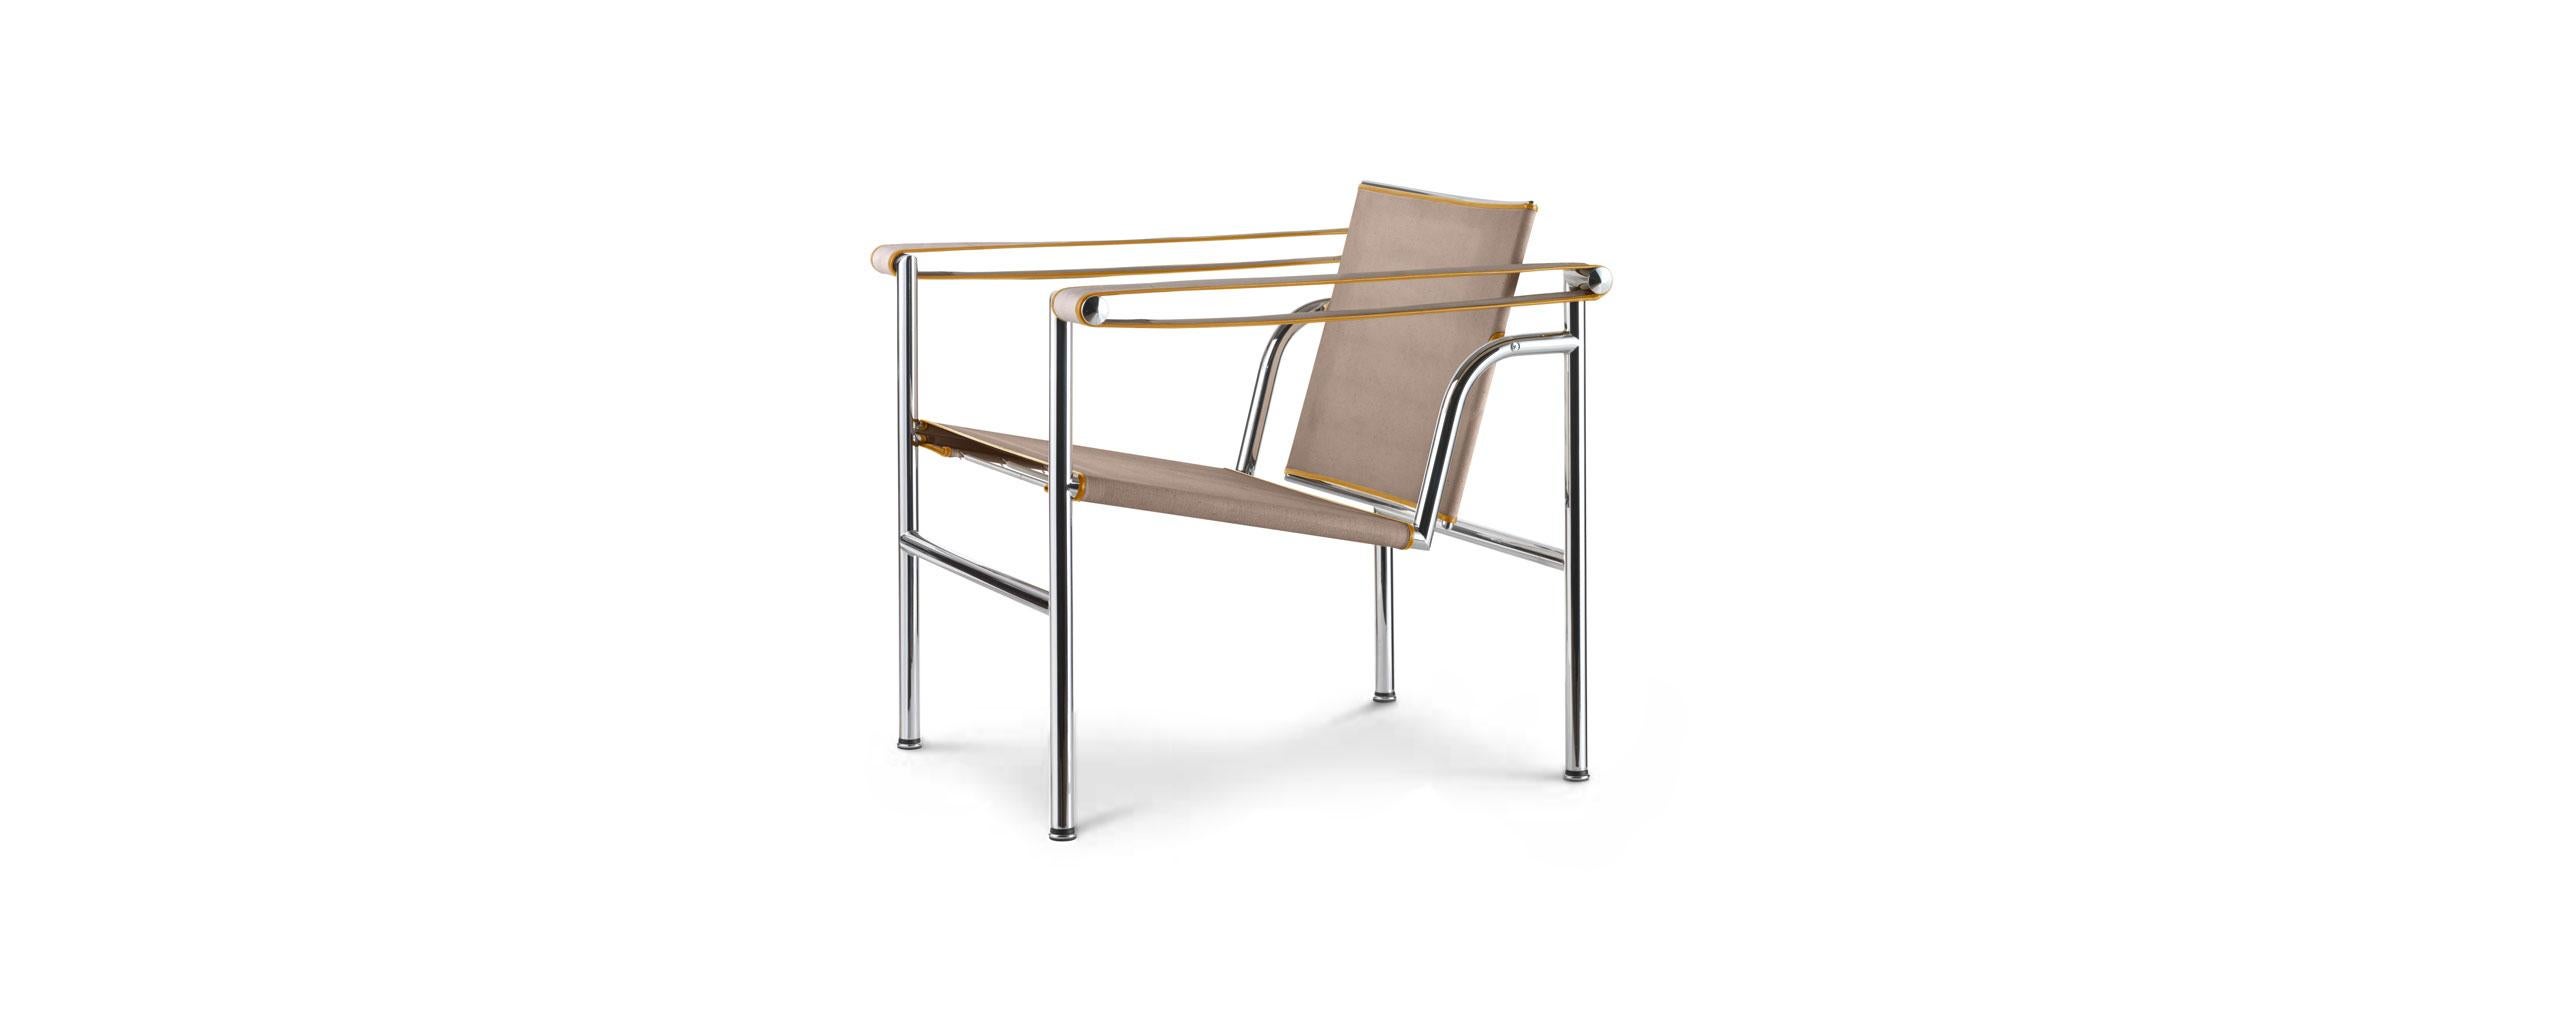 Stuhl, entworfen von Le Corbusier, Pierre Jeanneret und Charlotte Perriand im Jahr 1928. Neuauflage im Jahr 2011.
Hergestellt von Cassina in Italien.

Sessel mit Struktur aus poliertem, dreiwertigem, verchromtem Stahl (CR3). Die Armlehnen sind im